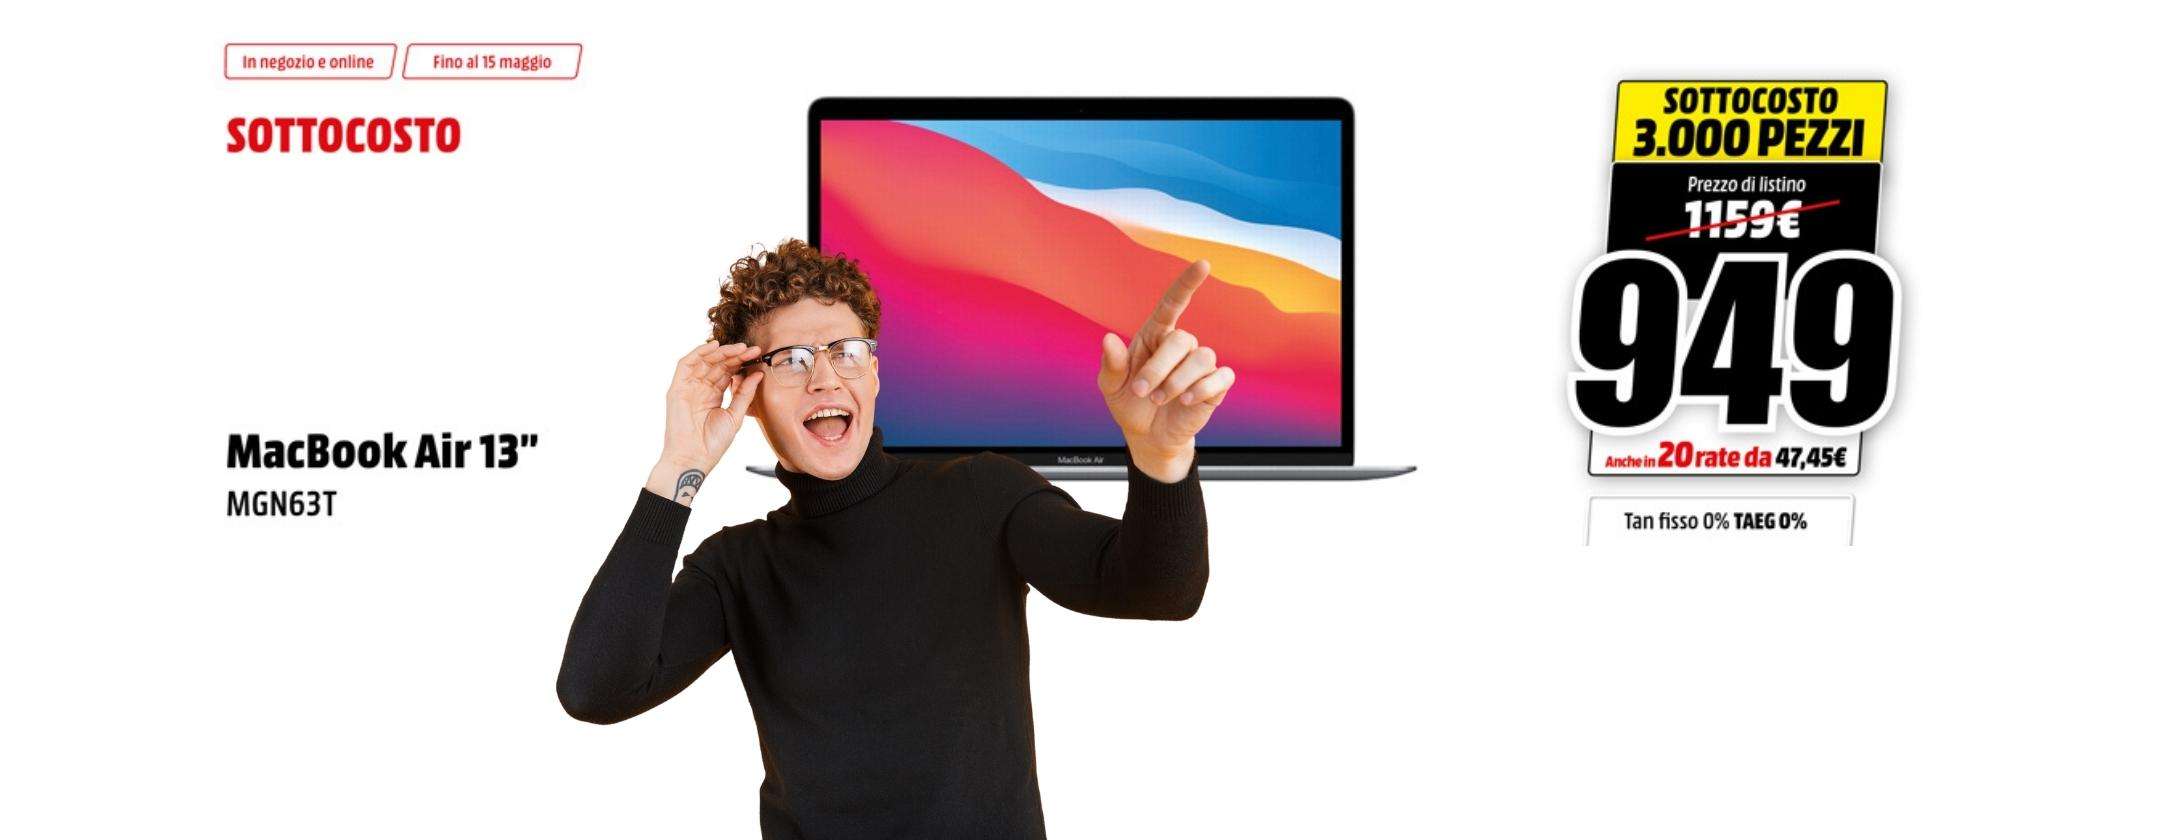 Apple MacBook Air in sottocosto: solo 3000 pezzi da MediaWorld